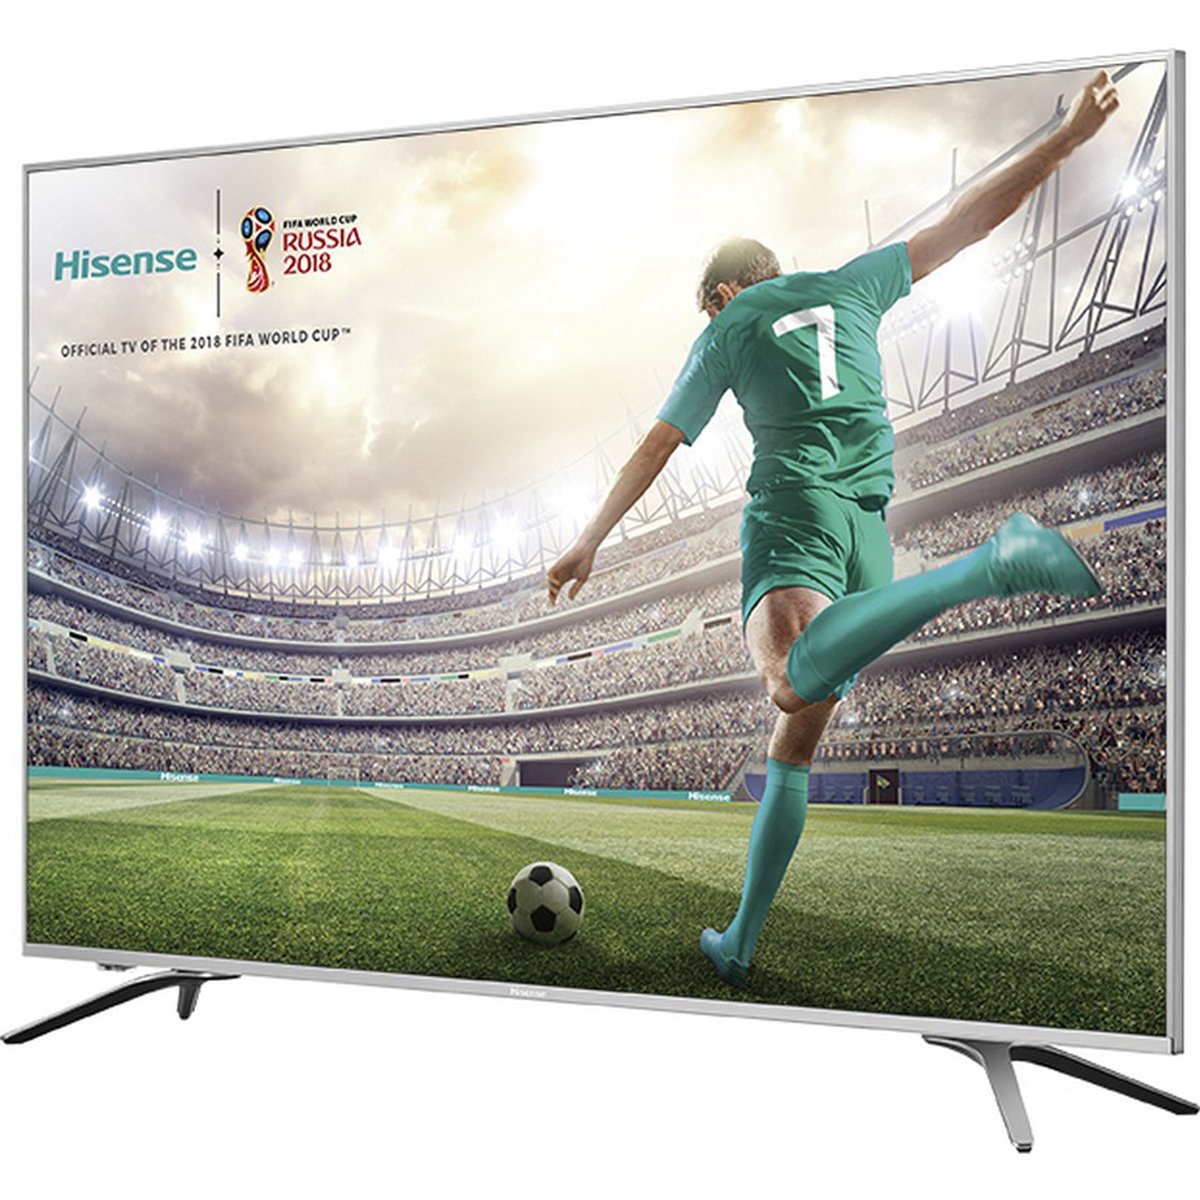 Hisense 4K Ultra HD Smart LED TV 55A6500UW 55inch